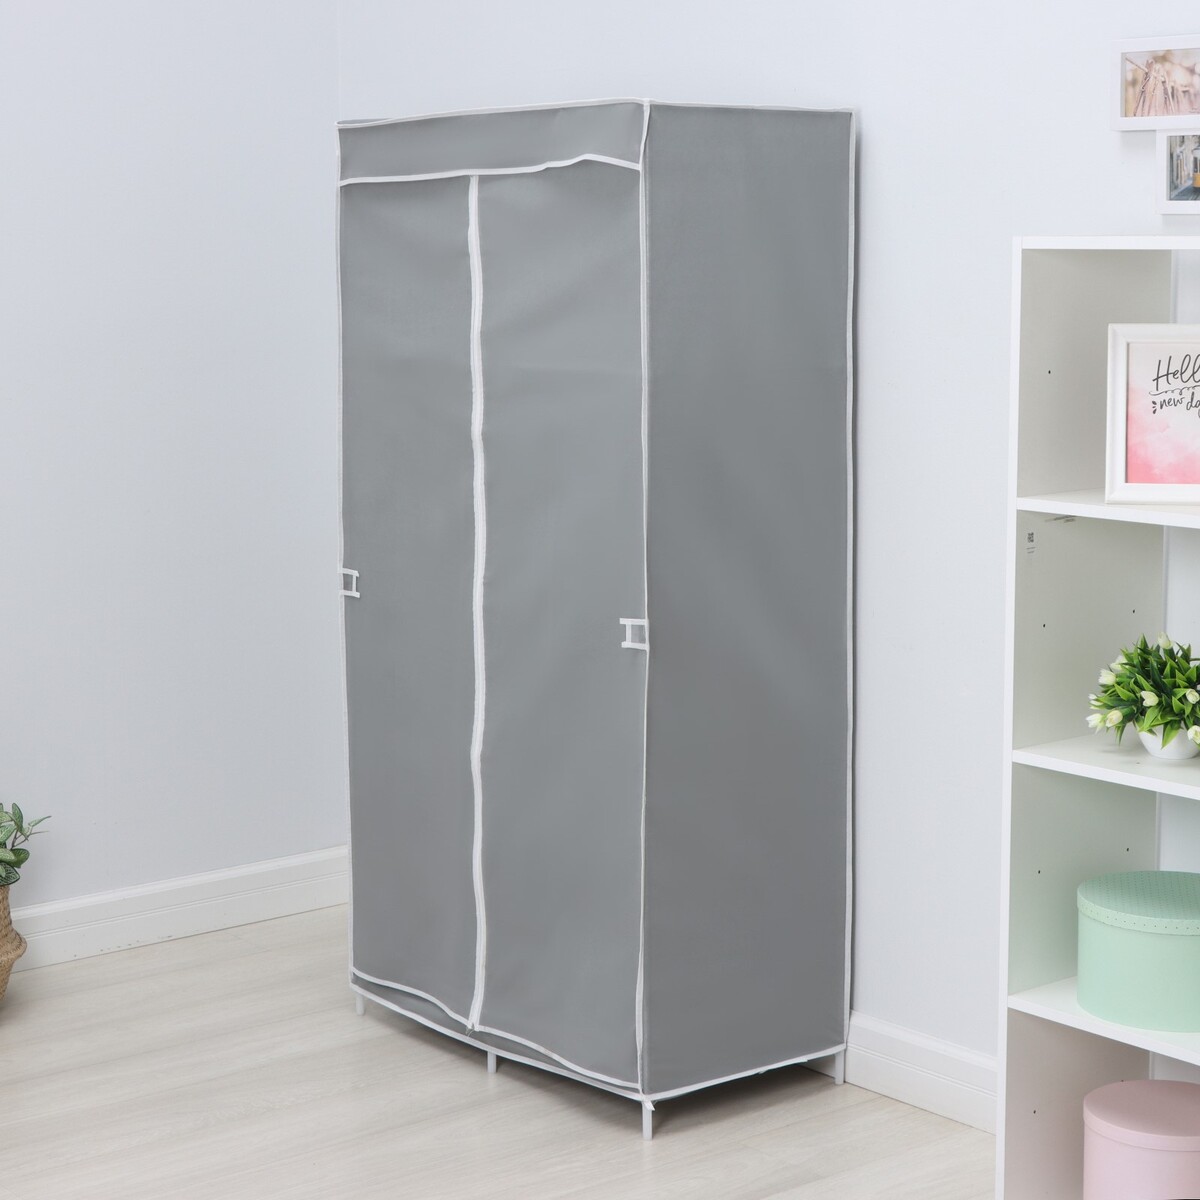 Шкаф тканевый каркасный, складной ladо́m, 83×45×160 см, цвет серый шкаф roba в детскую felicia